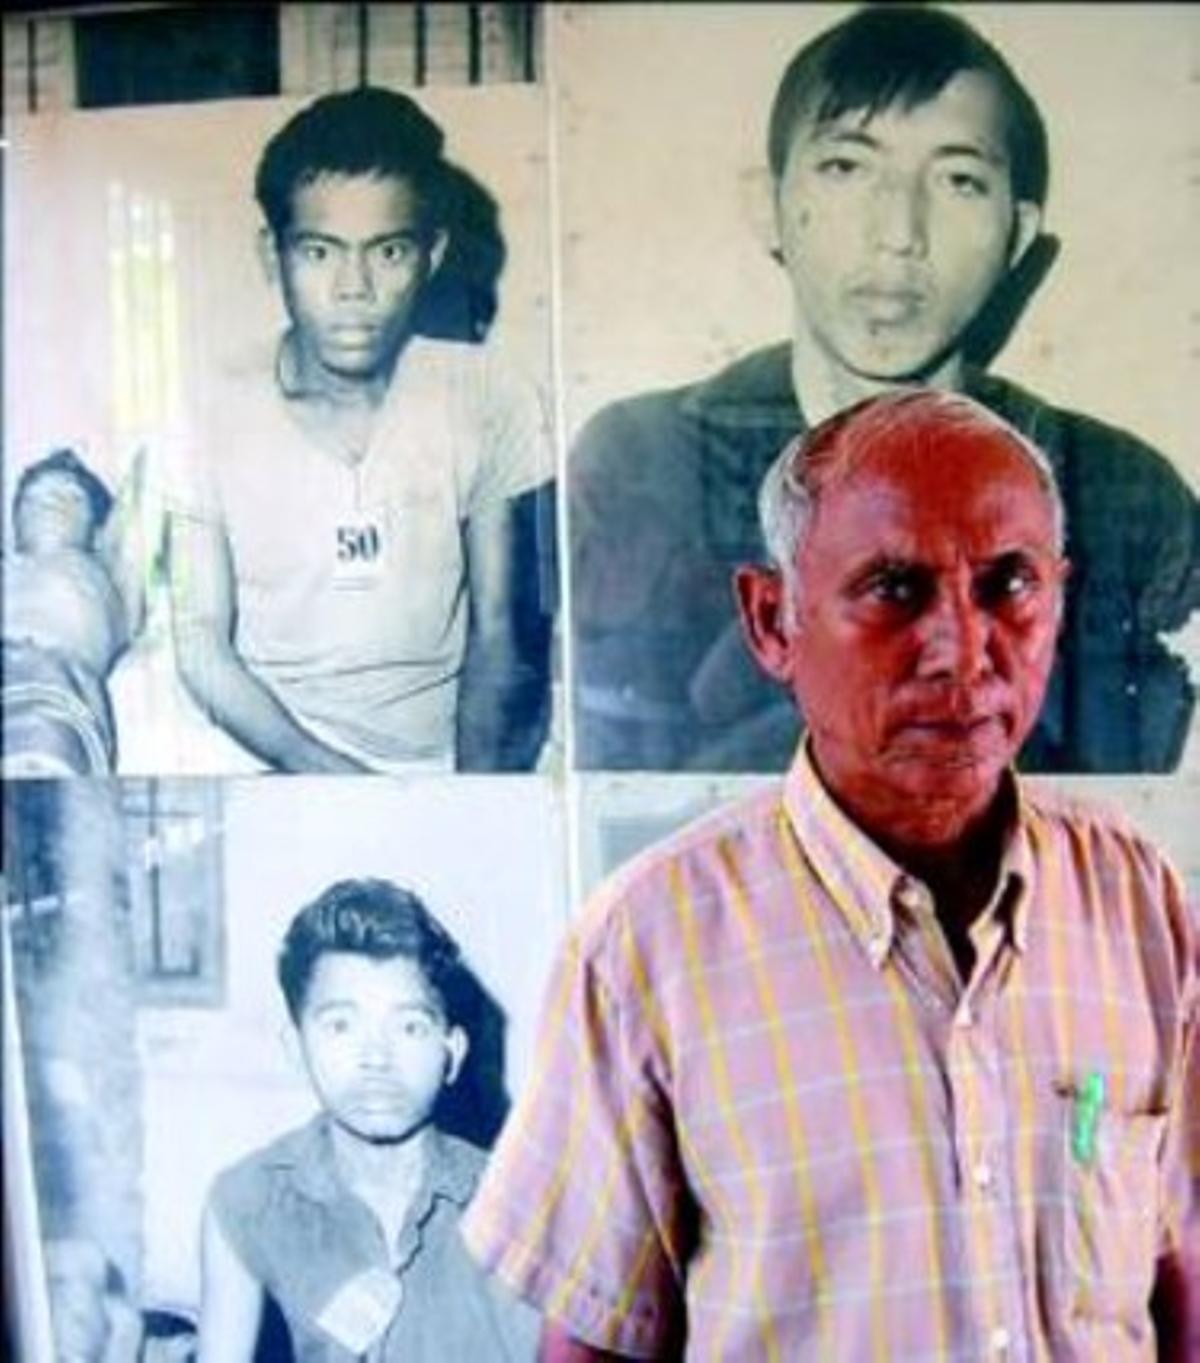  El supervivent. Chom Mey, al costat de fotos de les víctimes del genocidi cambodjà.